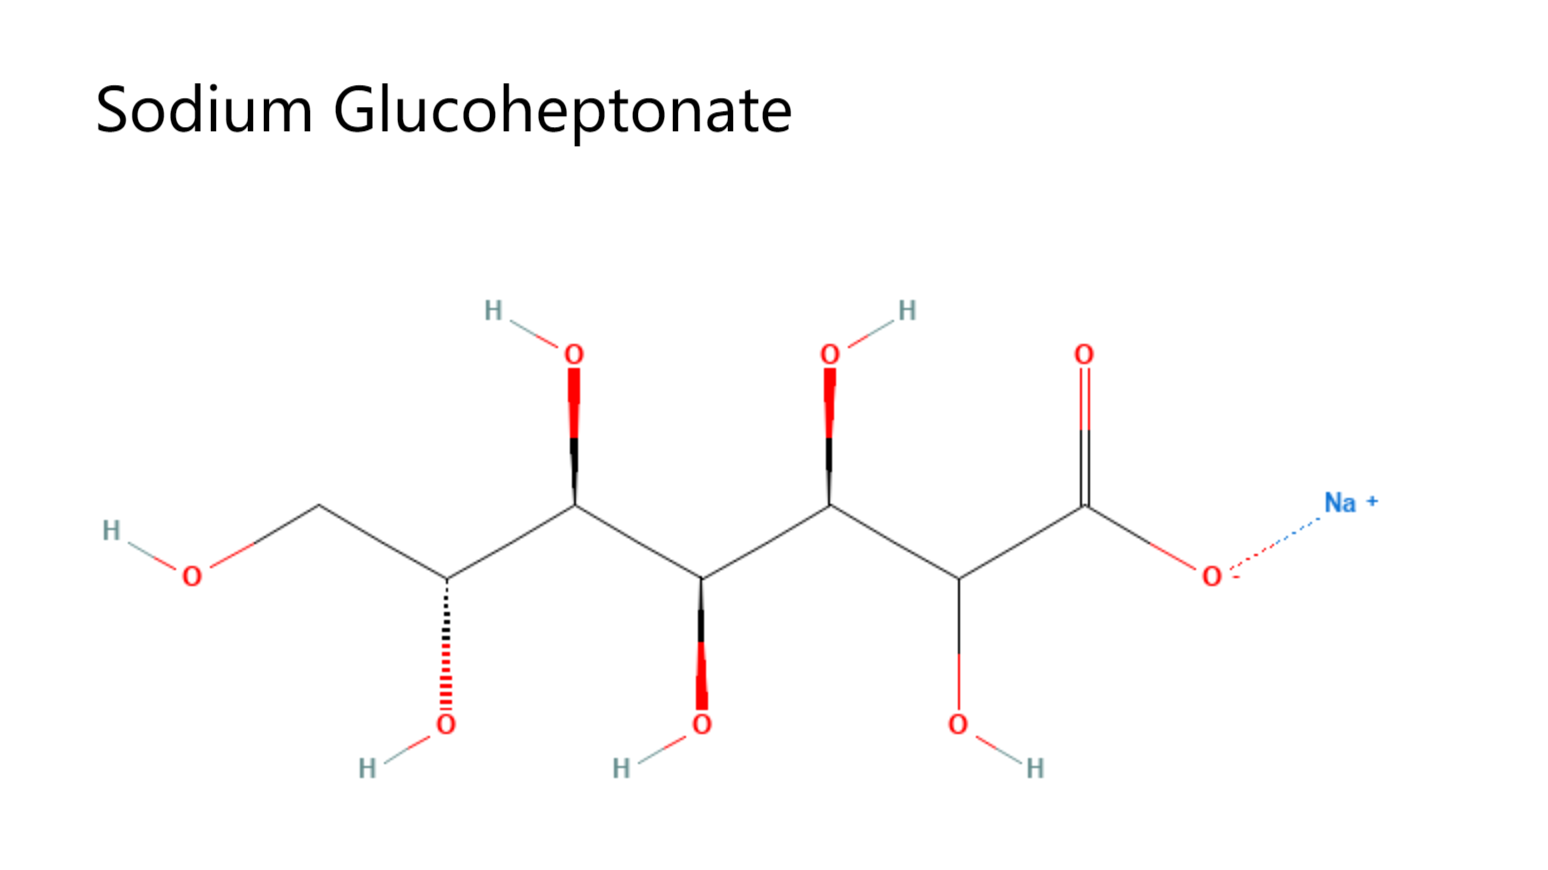 Sodium Glucoheptonate